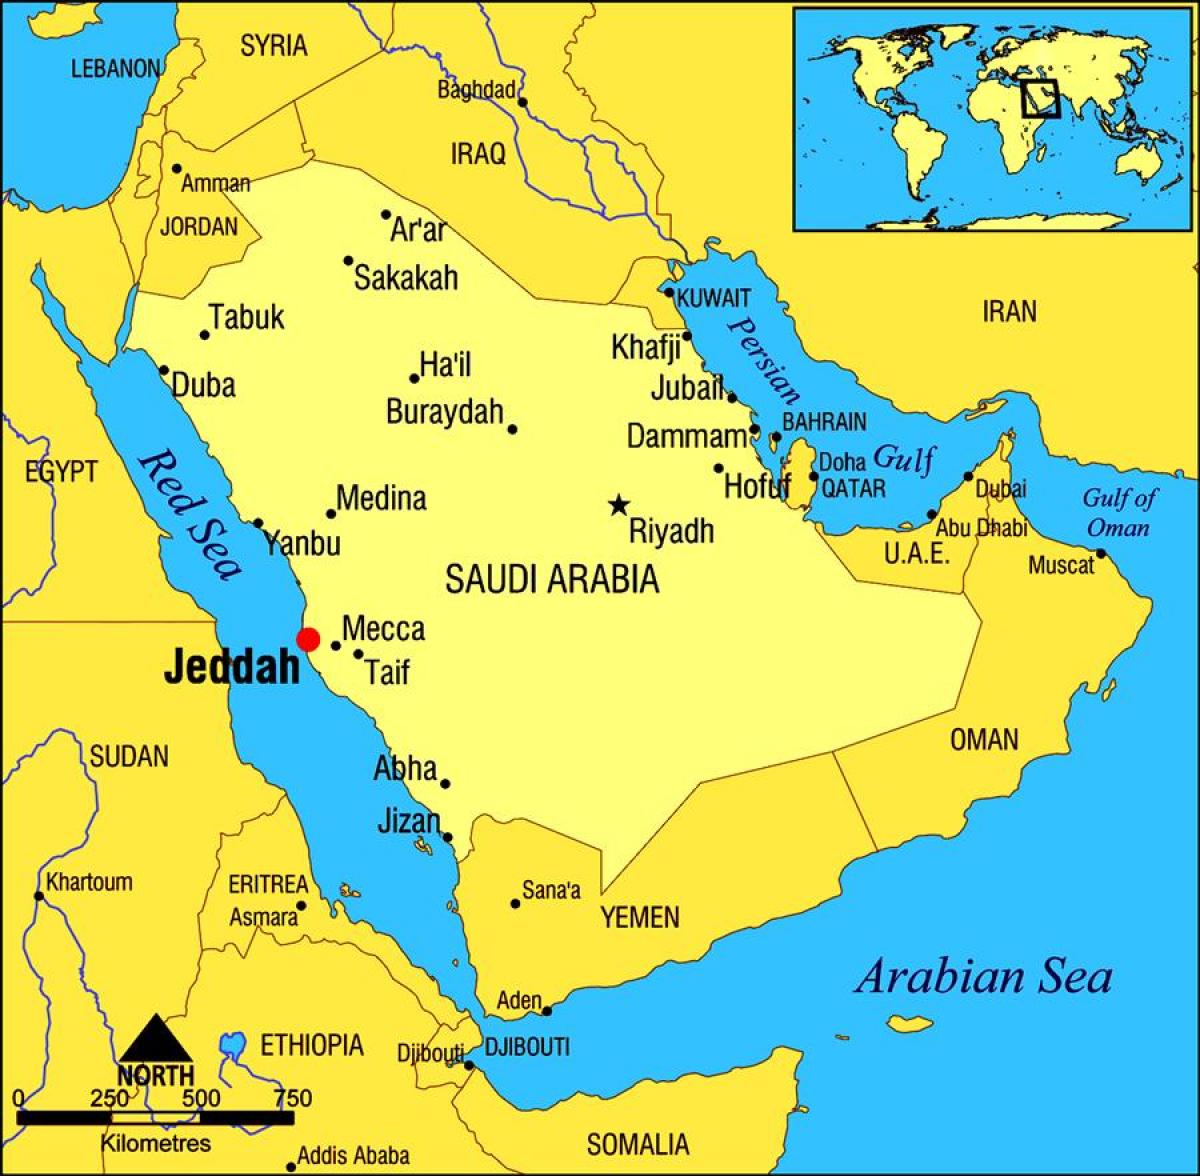 jeddah KSA mapu